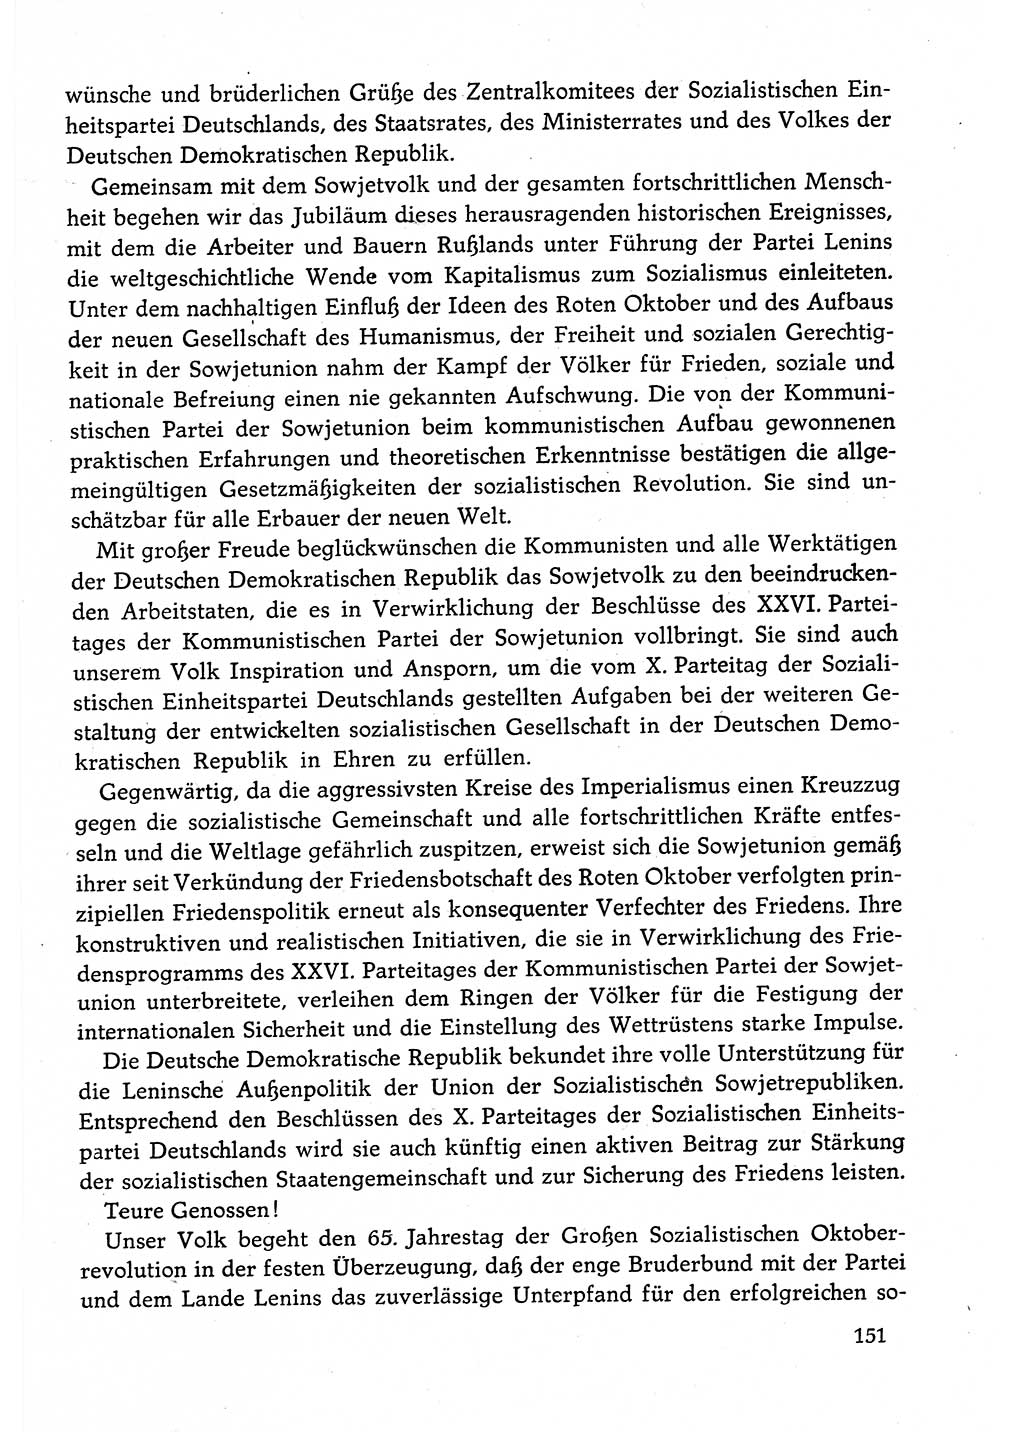 Dokumente der Sozialistischen Einheitspartei Deutschlands (SED) [Deutsche Demokratische Republik (DDR)] 1982-1983, Seite 151 (Dok. SED DDR 1982-1983, S. 151)